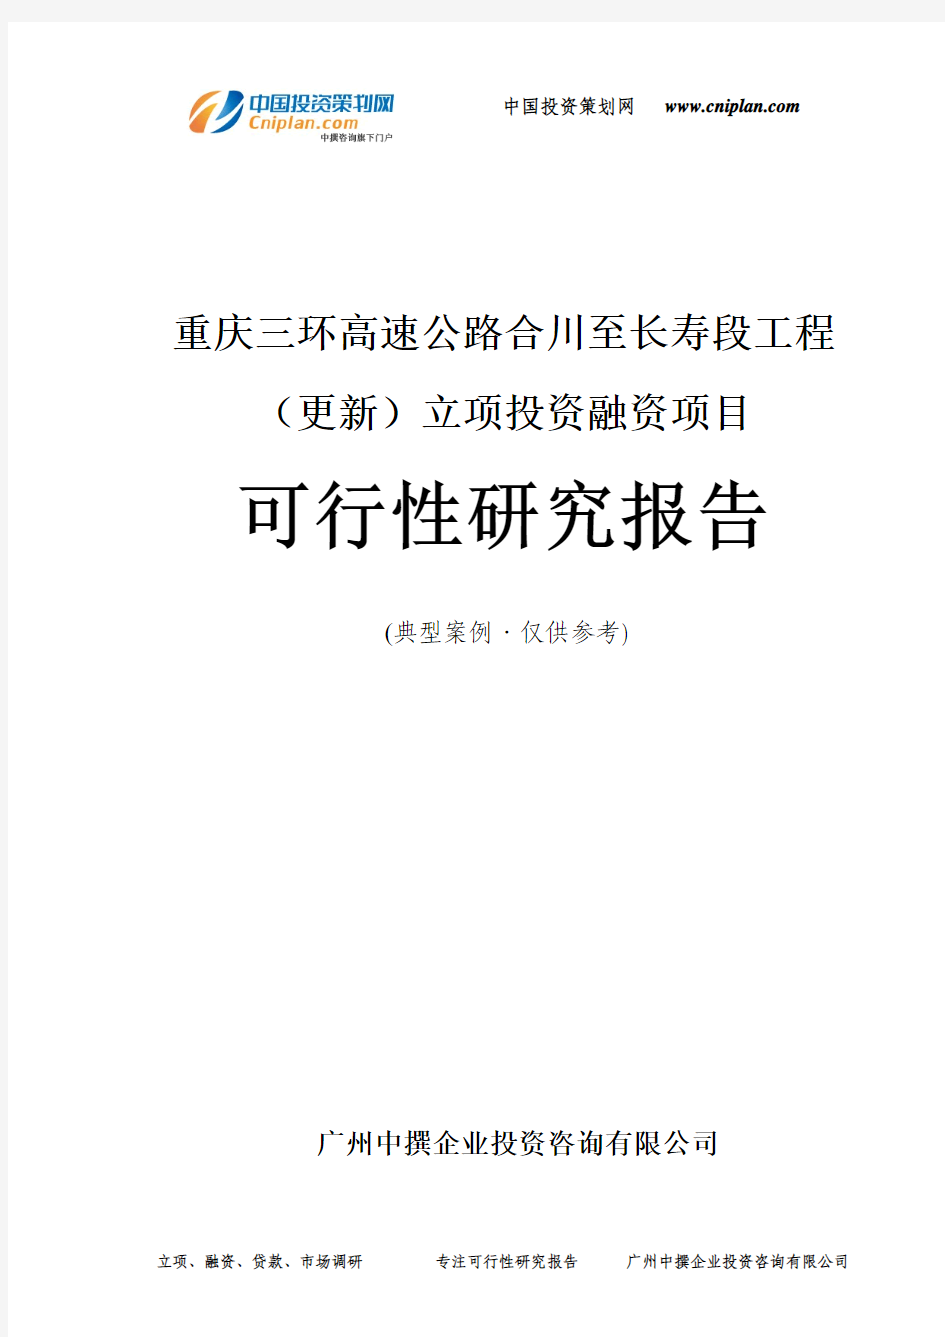 重庆三环高速公路合川至长寿段工程(更新)融资投资立项项目可行性研究报告(非常详细)